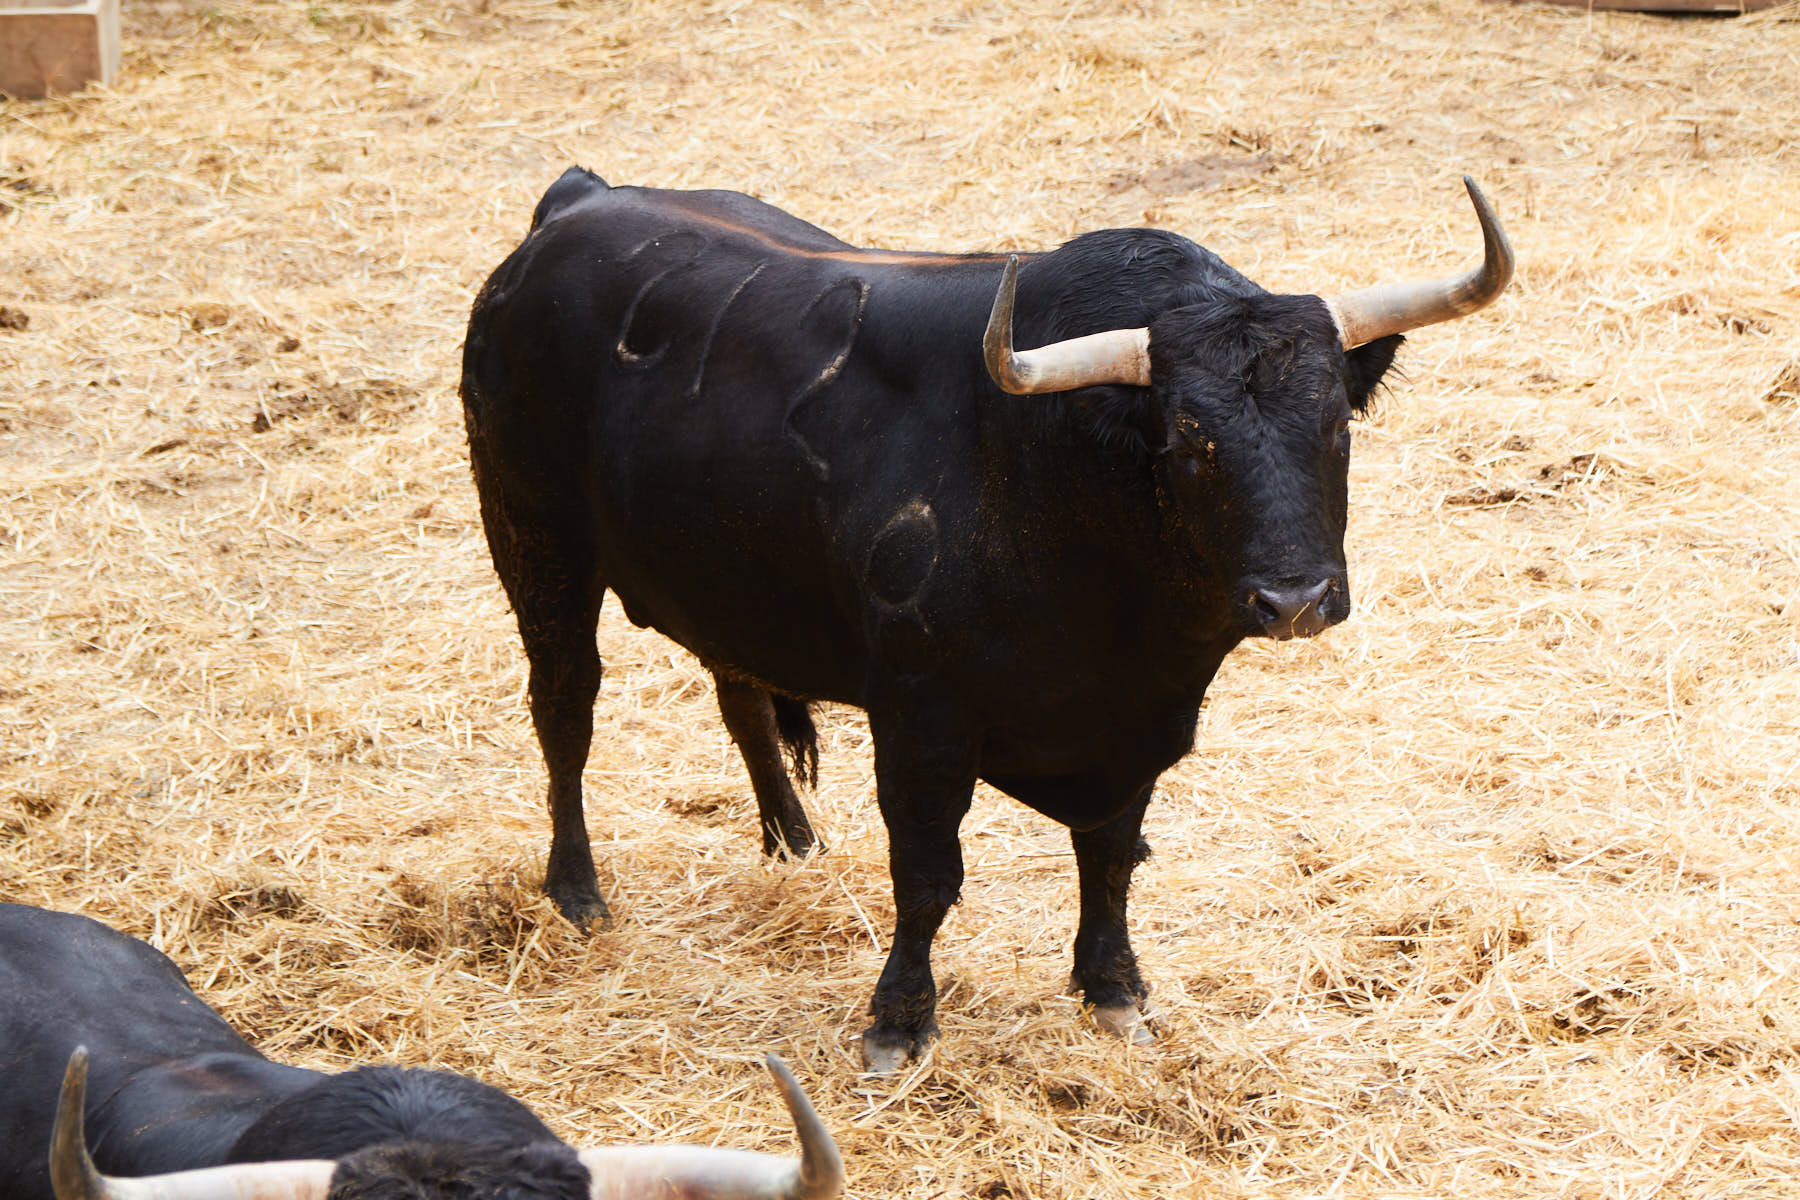 El toro Pijotero (nº 212) de la ganadería de Fuente Ymbro (10 de julio) y de 585 kilos de peso en los corrales del Gas de Pamplona. IÑIGO ALZUGARAY